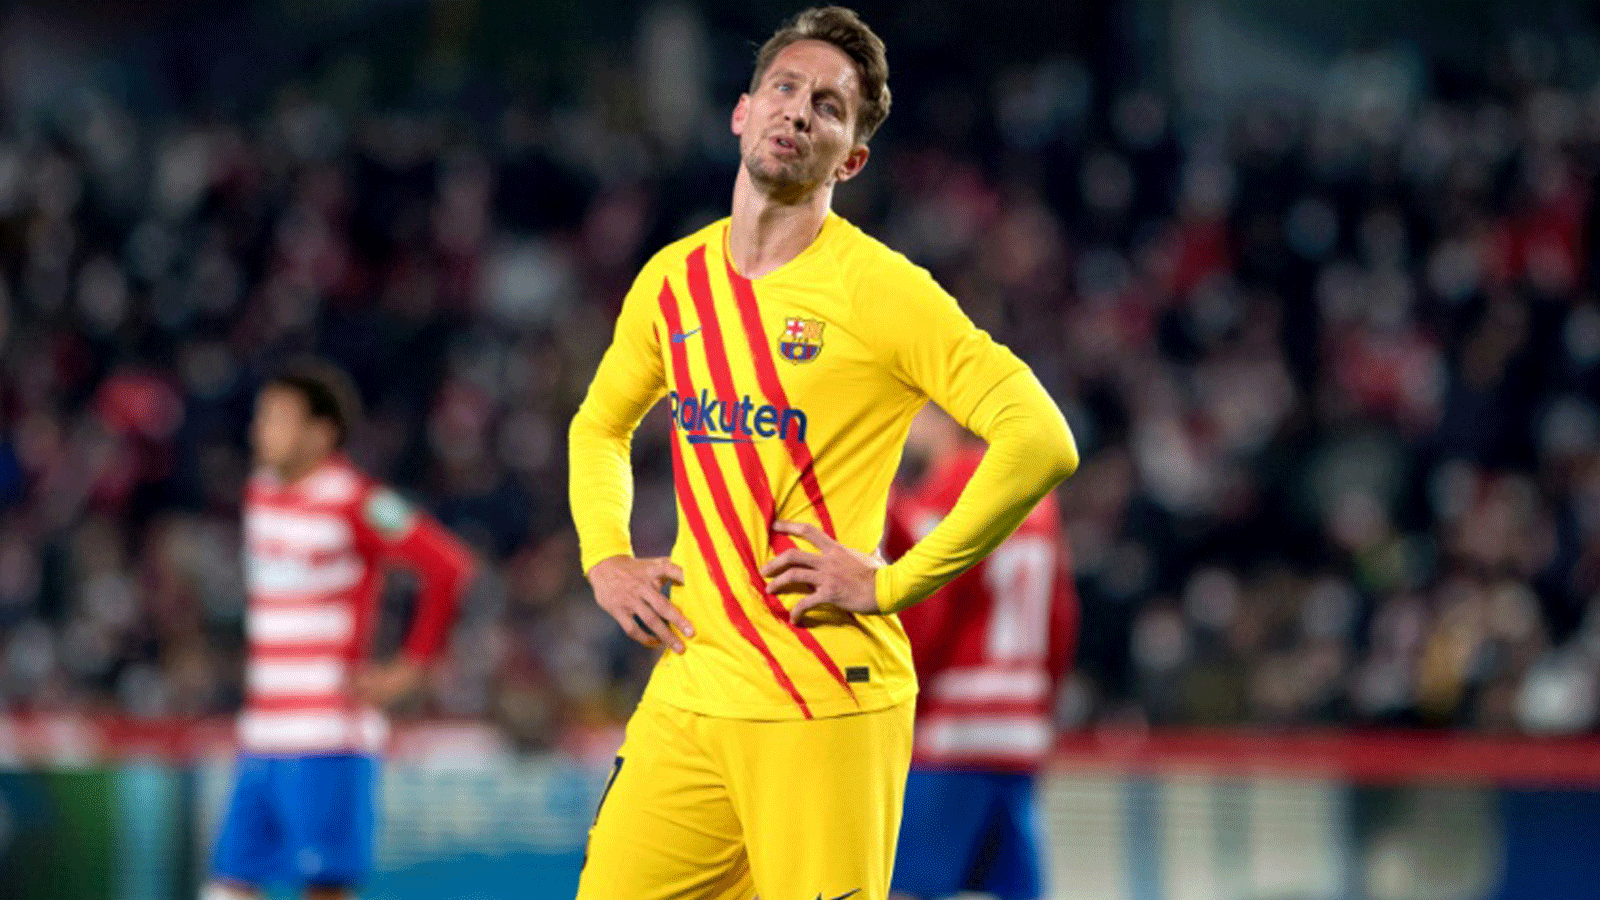 ردّة فعل حزينة للاعب برشلونة الاسباني الهولندي لوك دي يونغ بعدما سجّل غرناطة هدف التعادل في الدقيقة 89 من المباراة التي جمعت الفريقين ضمن المرحلة العشرين من الدوري الإسباني لكرة القدم السبت 8 كانون الثاني/ديسمبر 2022